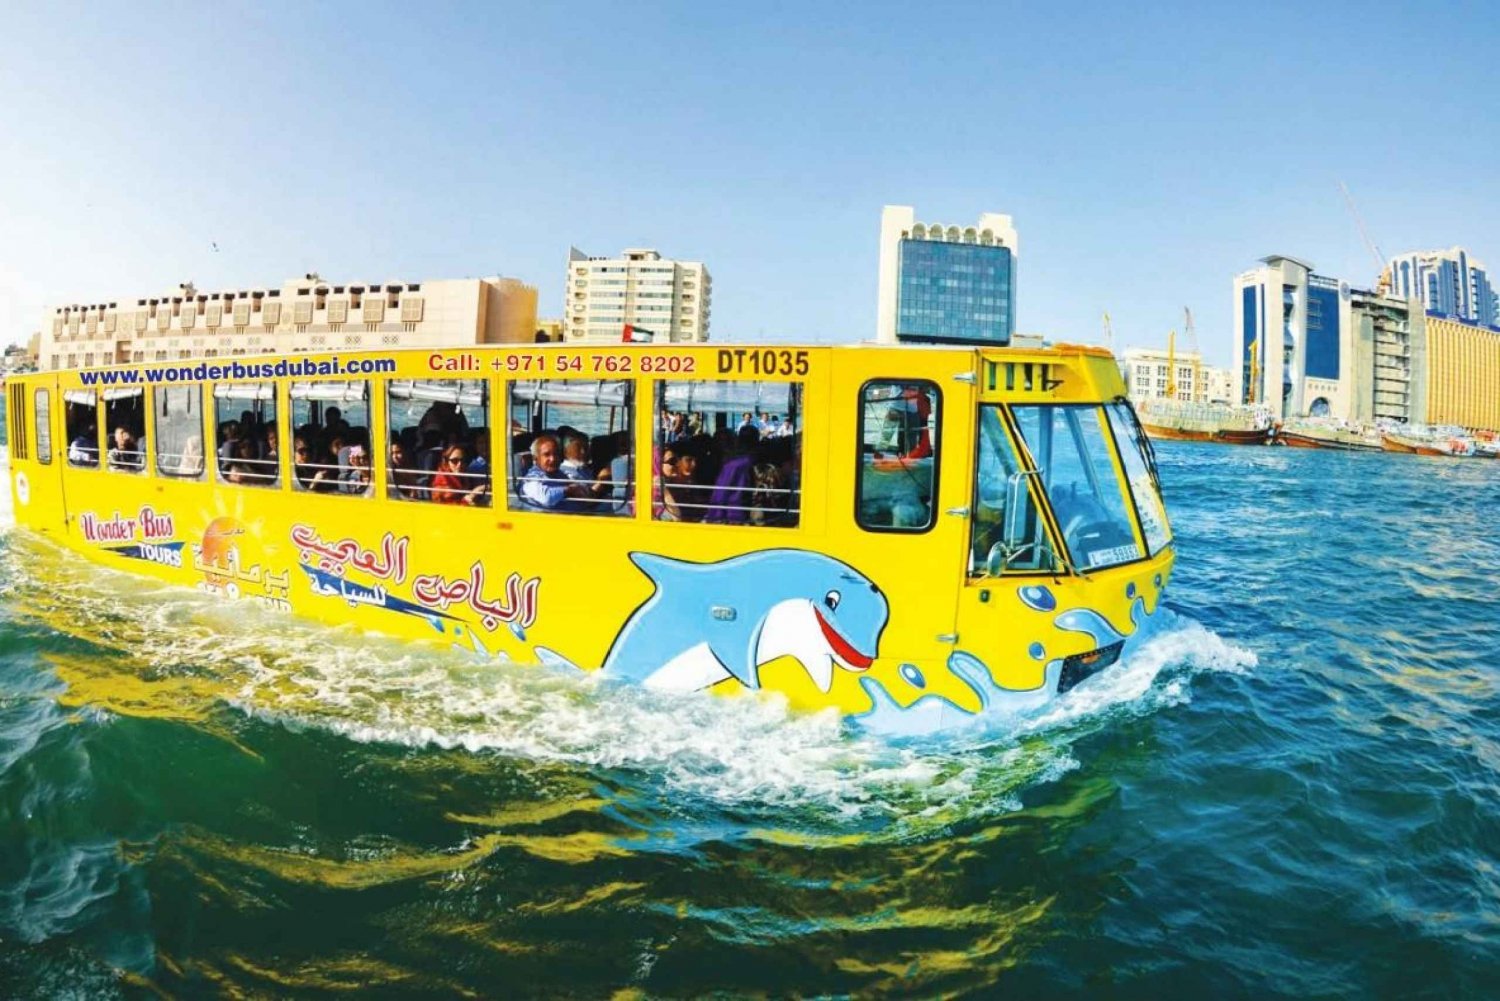 Dubai: Visita del casco antiguo con Wonder Bus, zocos, Creek y guía